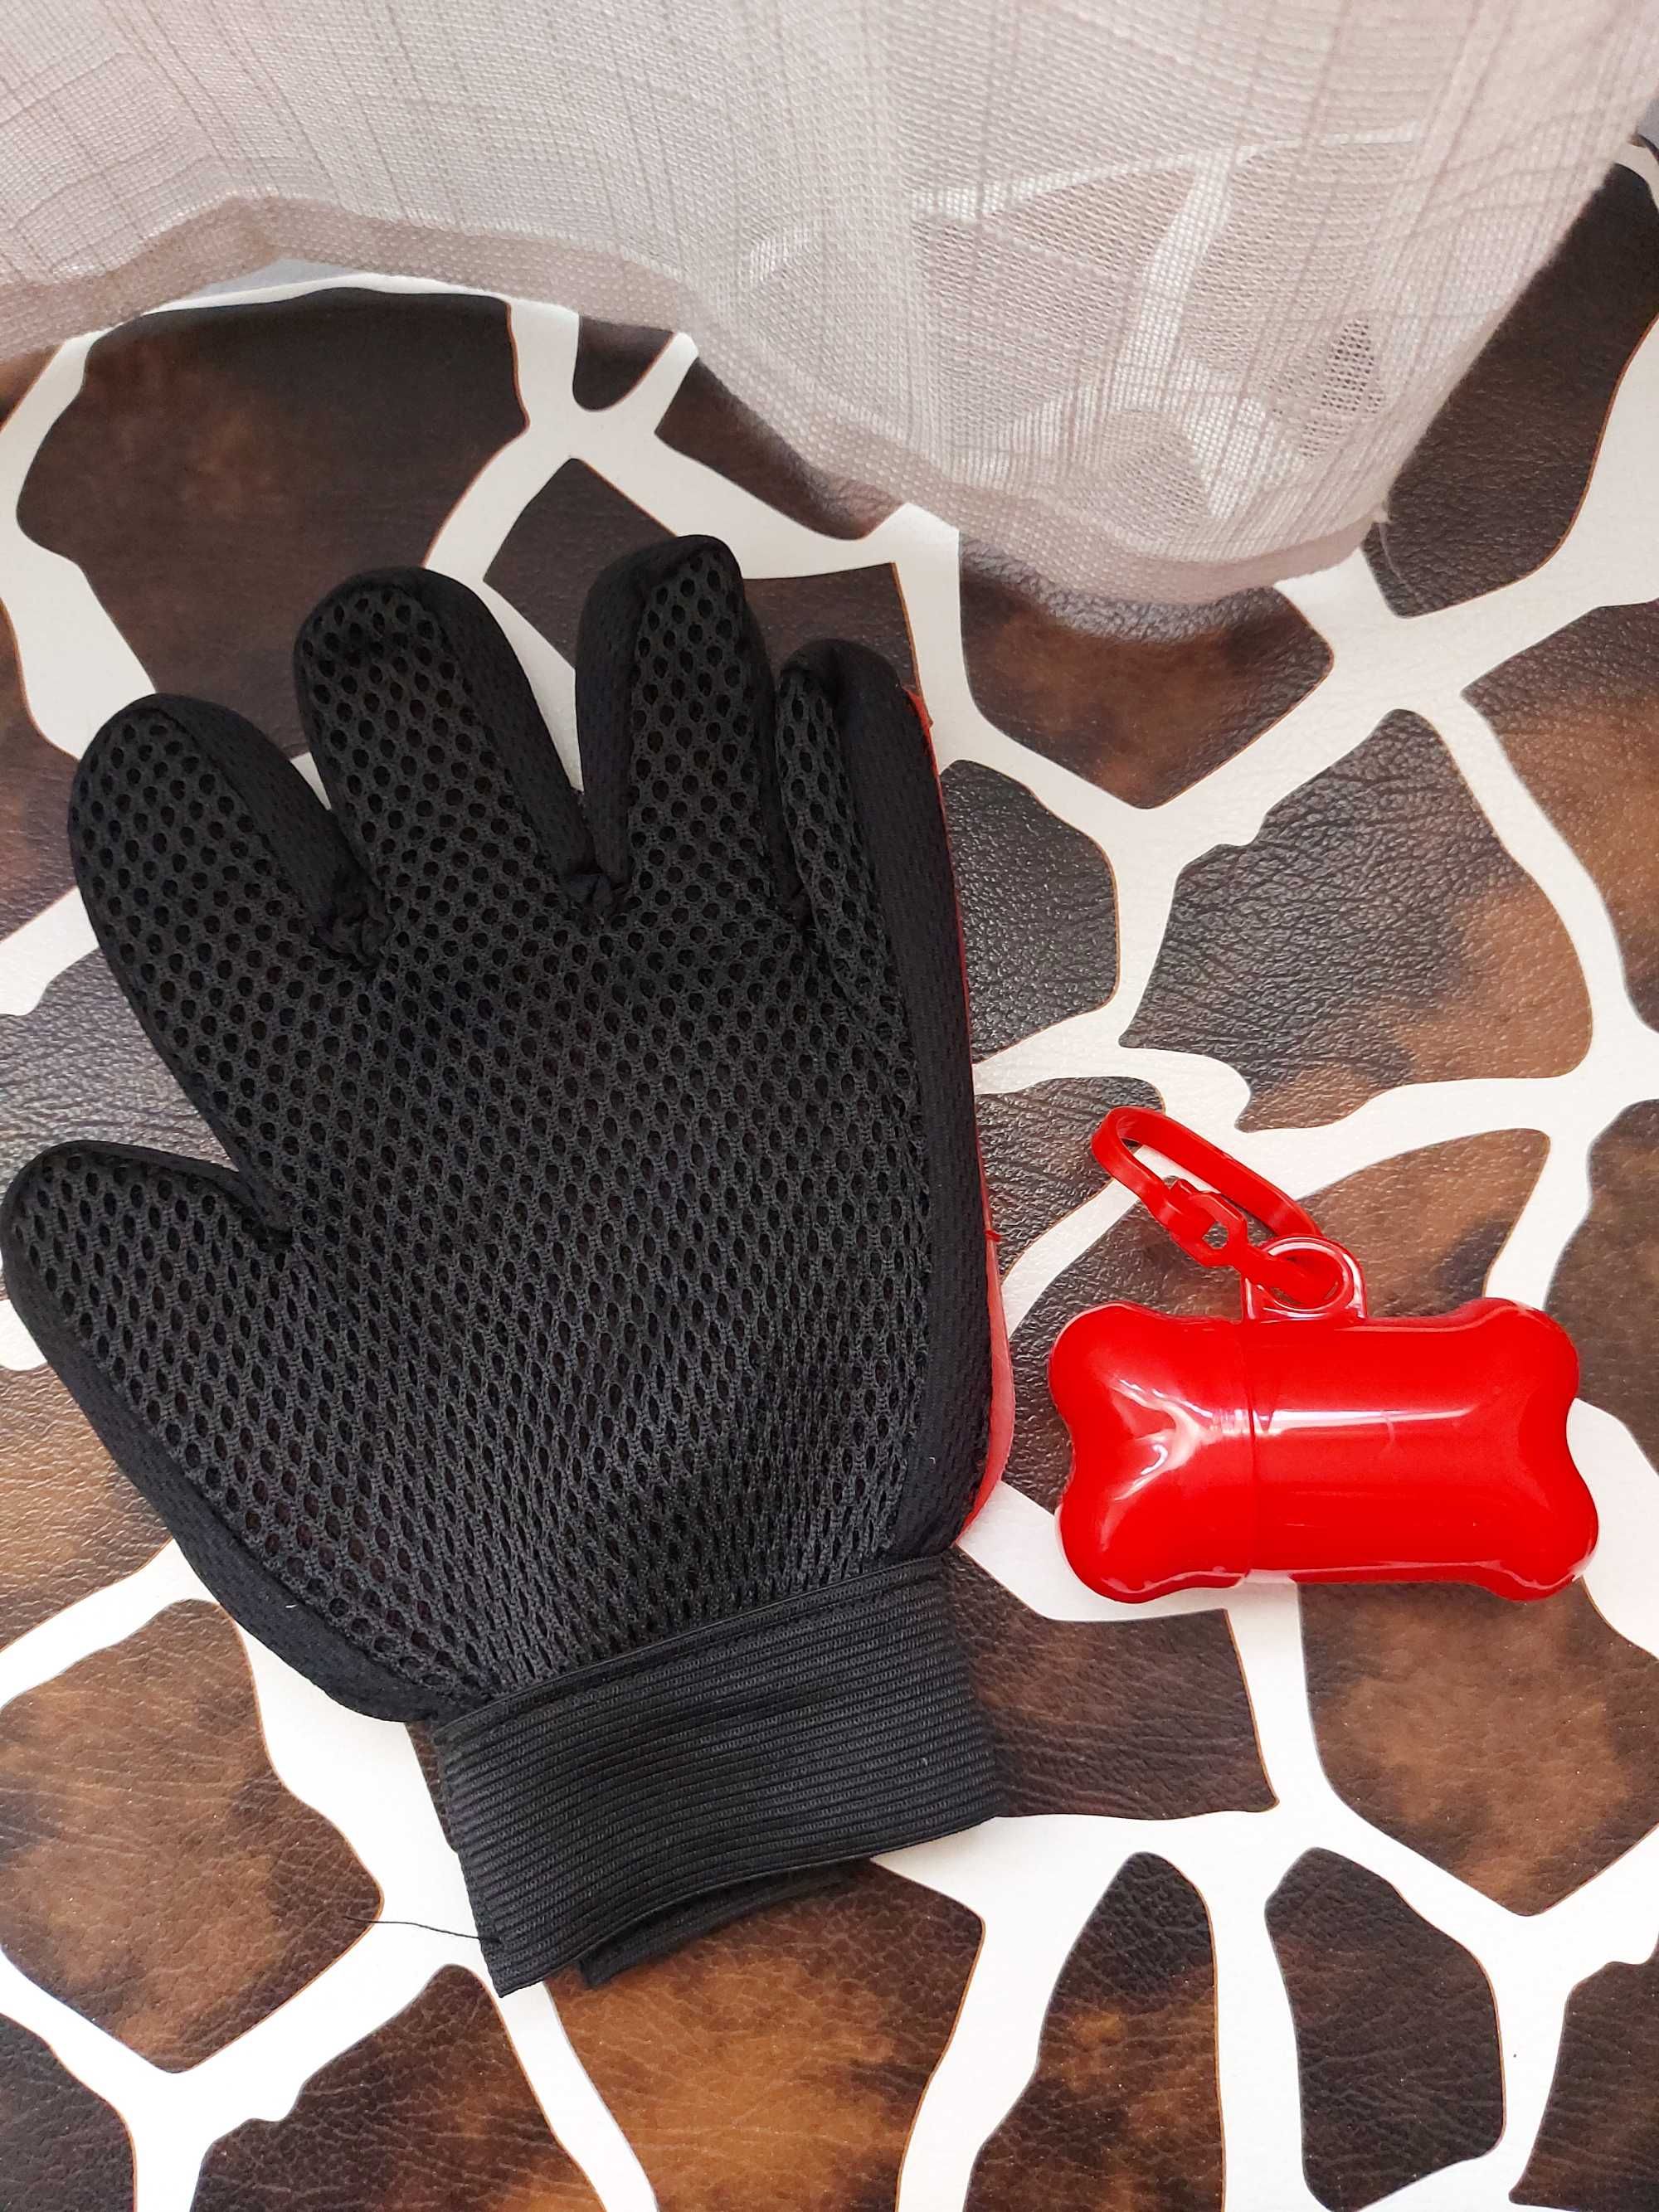 Conjunto Luva/Escova da Pet Glove e Dispensador para sacos higiénicos